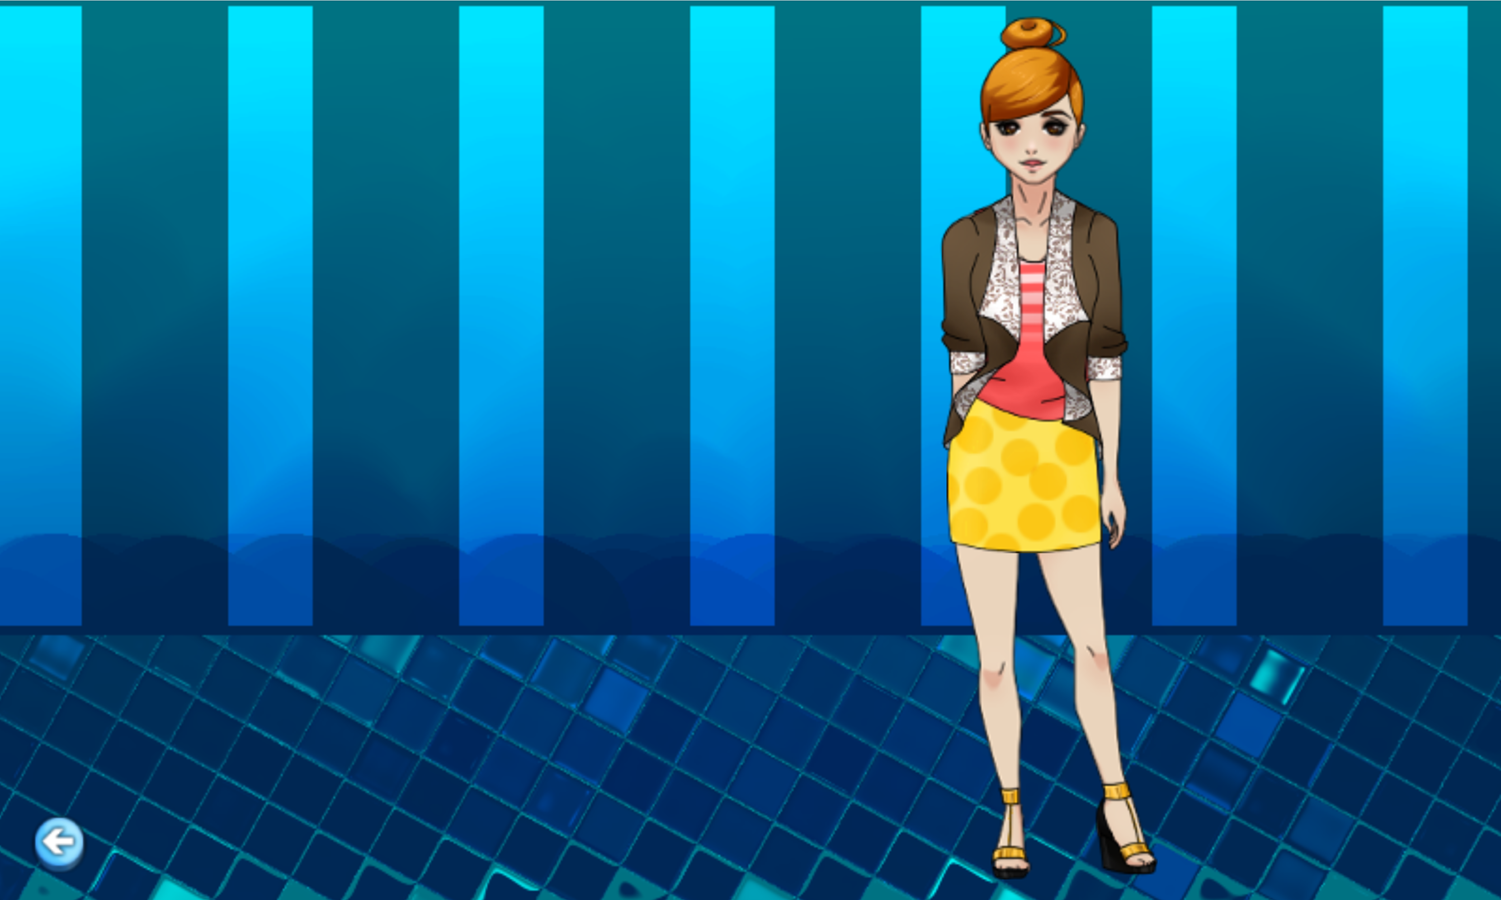 Amelia Dress Up Game Export Screenshot.